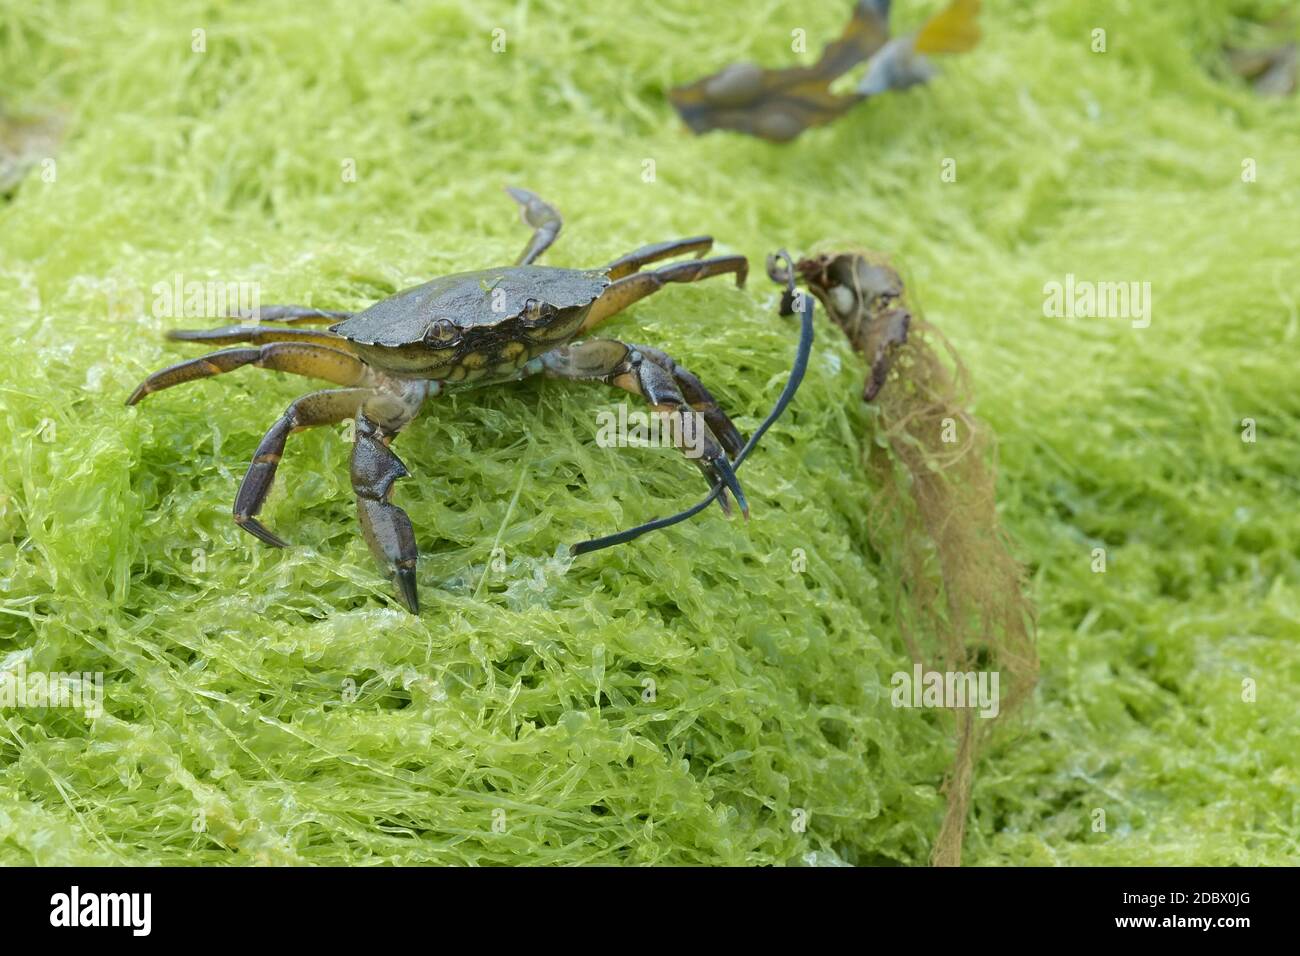 Le crabe commun, également connu sous le nom de crabe vert européen, Carcinus maenas, se dresse sur l'algue verte brandissant l'algue dans sa griffe gauche. Banque D'Images